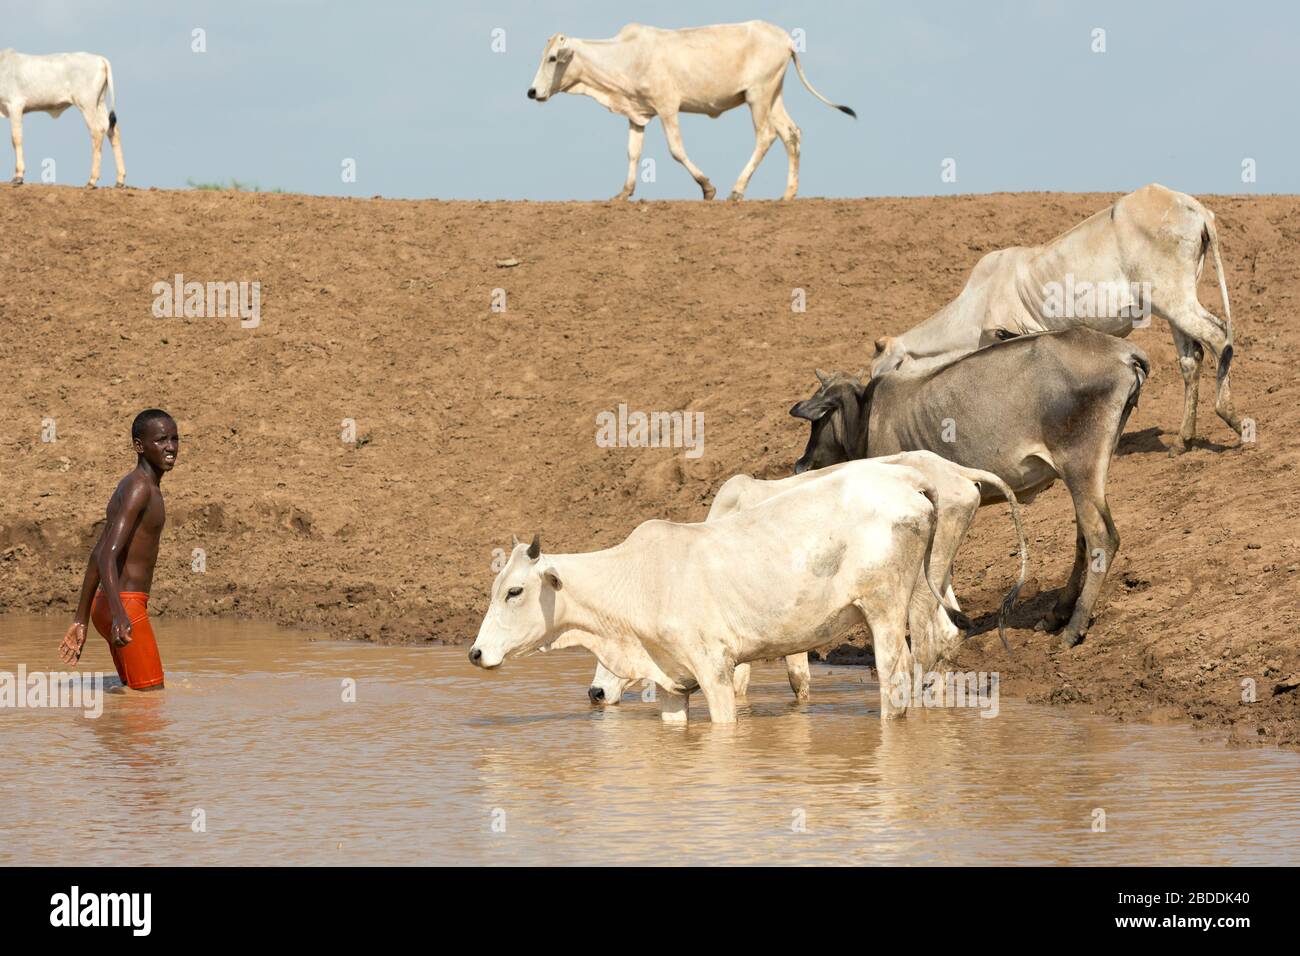 11.11.2019 steht Gode, Somali-Region, Äthiopien - Afrikanische Kuhherde an einem Wassertrog. Ein Mann erfrischt sich im Wasser. Projektdokumentation Stockfoto